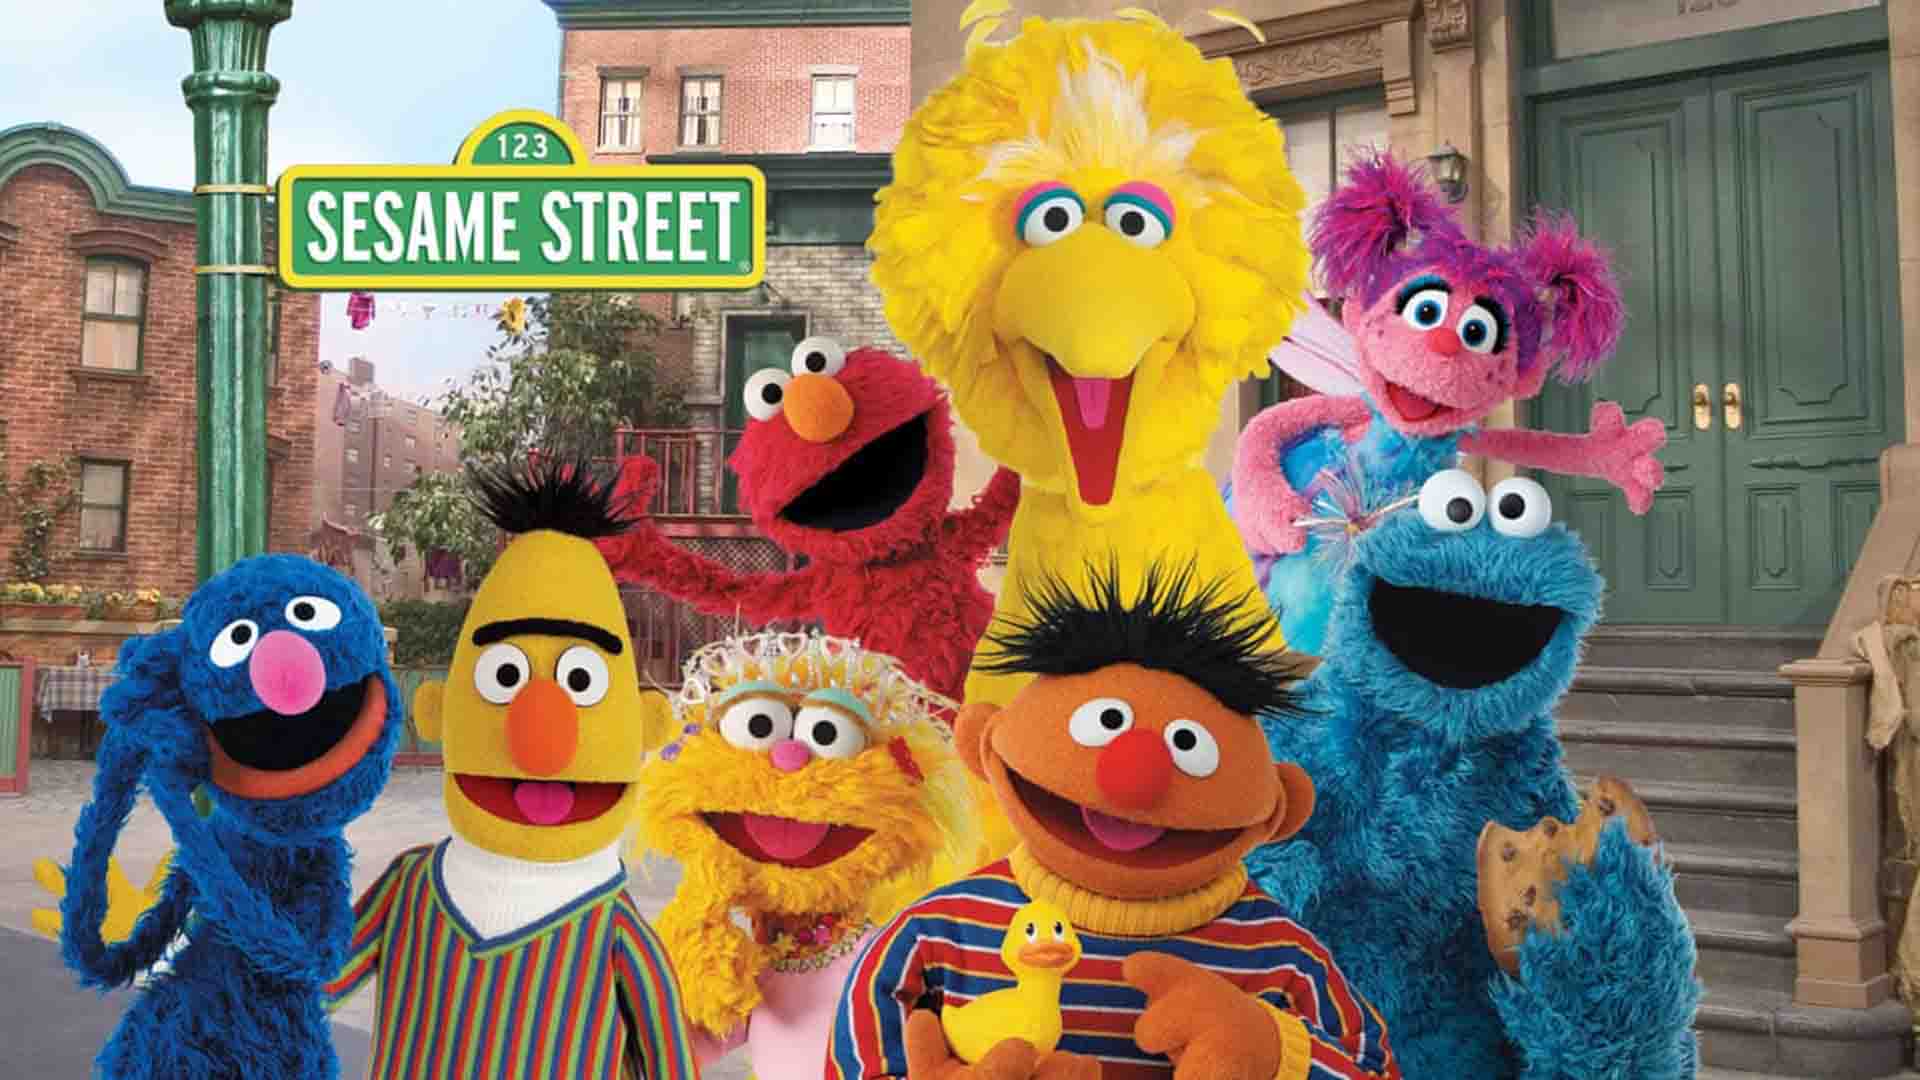 Sesame Street colorful dolls together